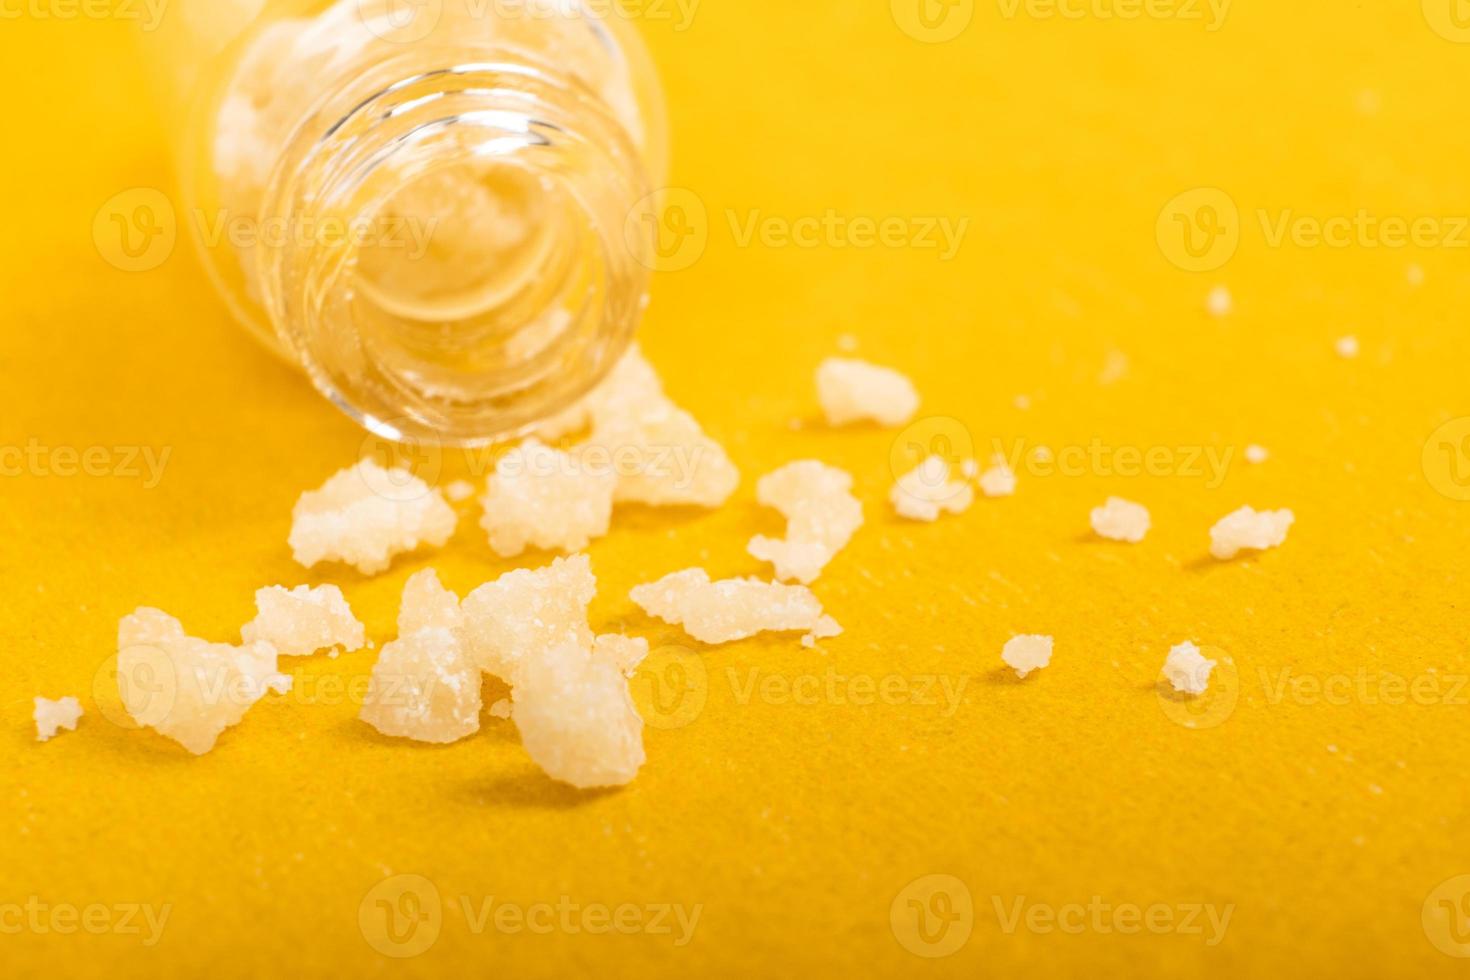 cristaux de sel narcotique amphétamine sur fond jaune photo